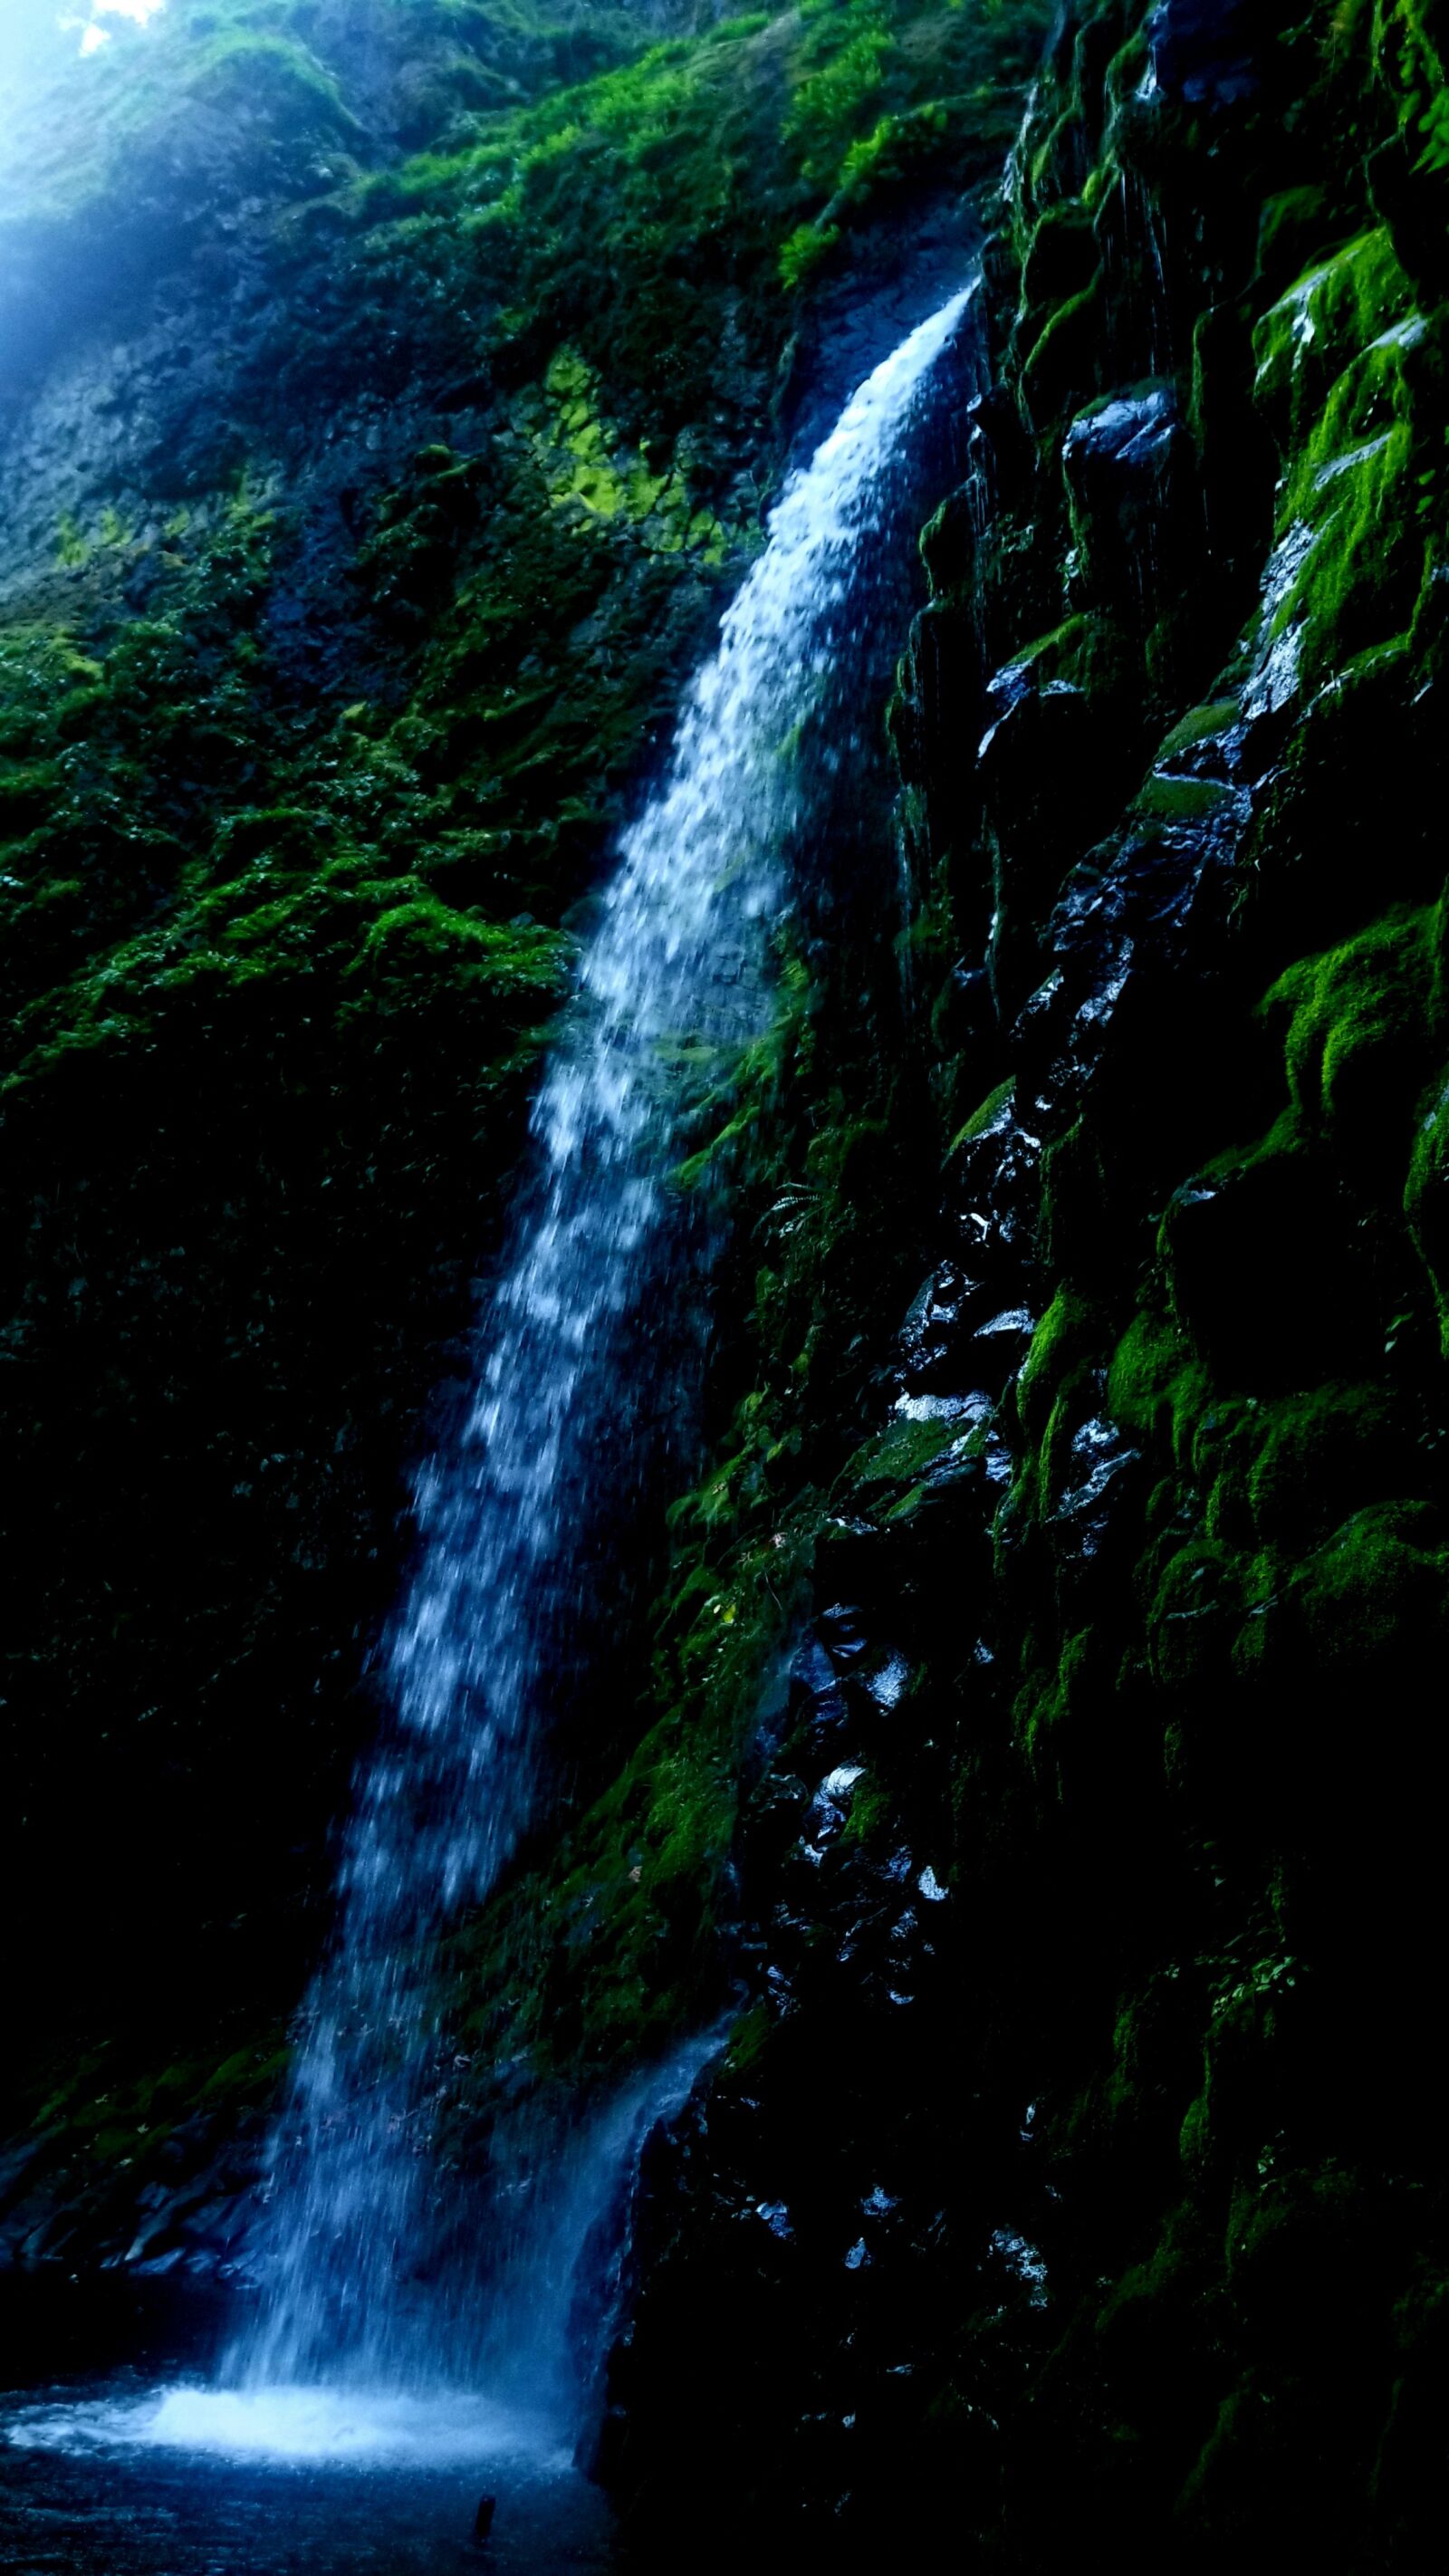 Samsung Galaxy Note9 sample photo. Fall creek falls, falls photography